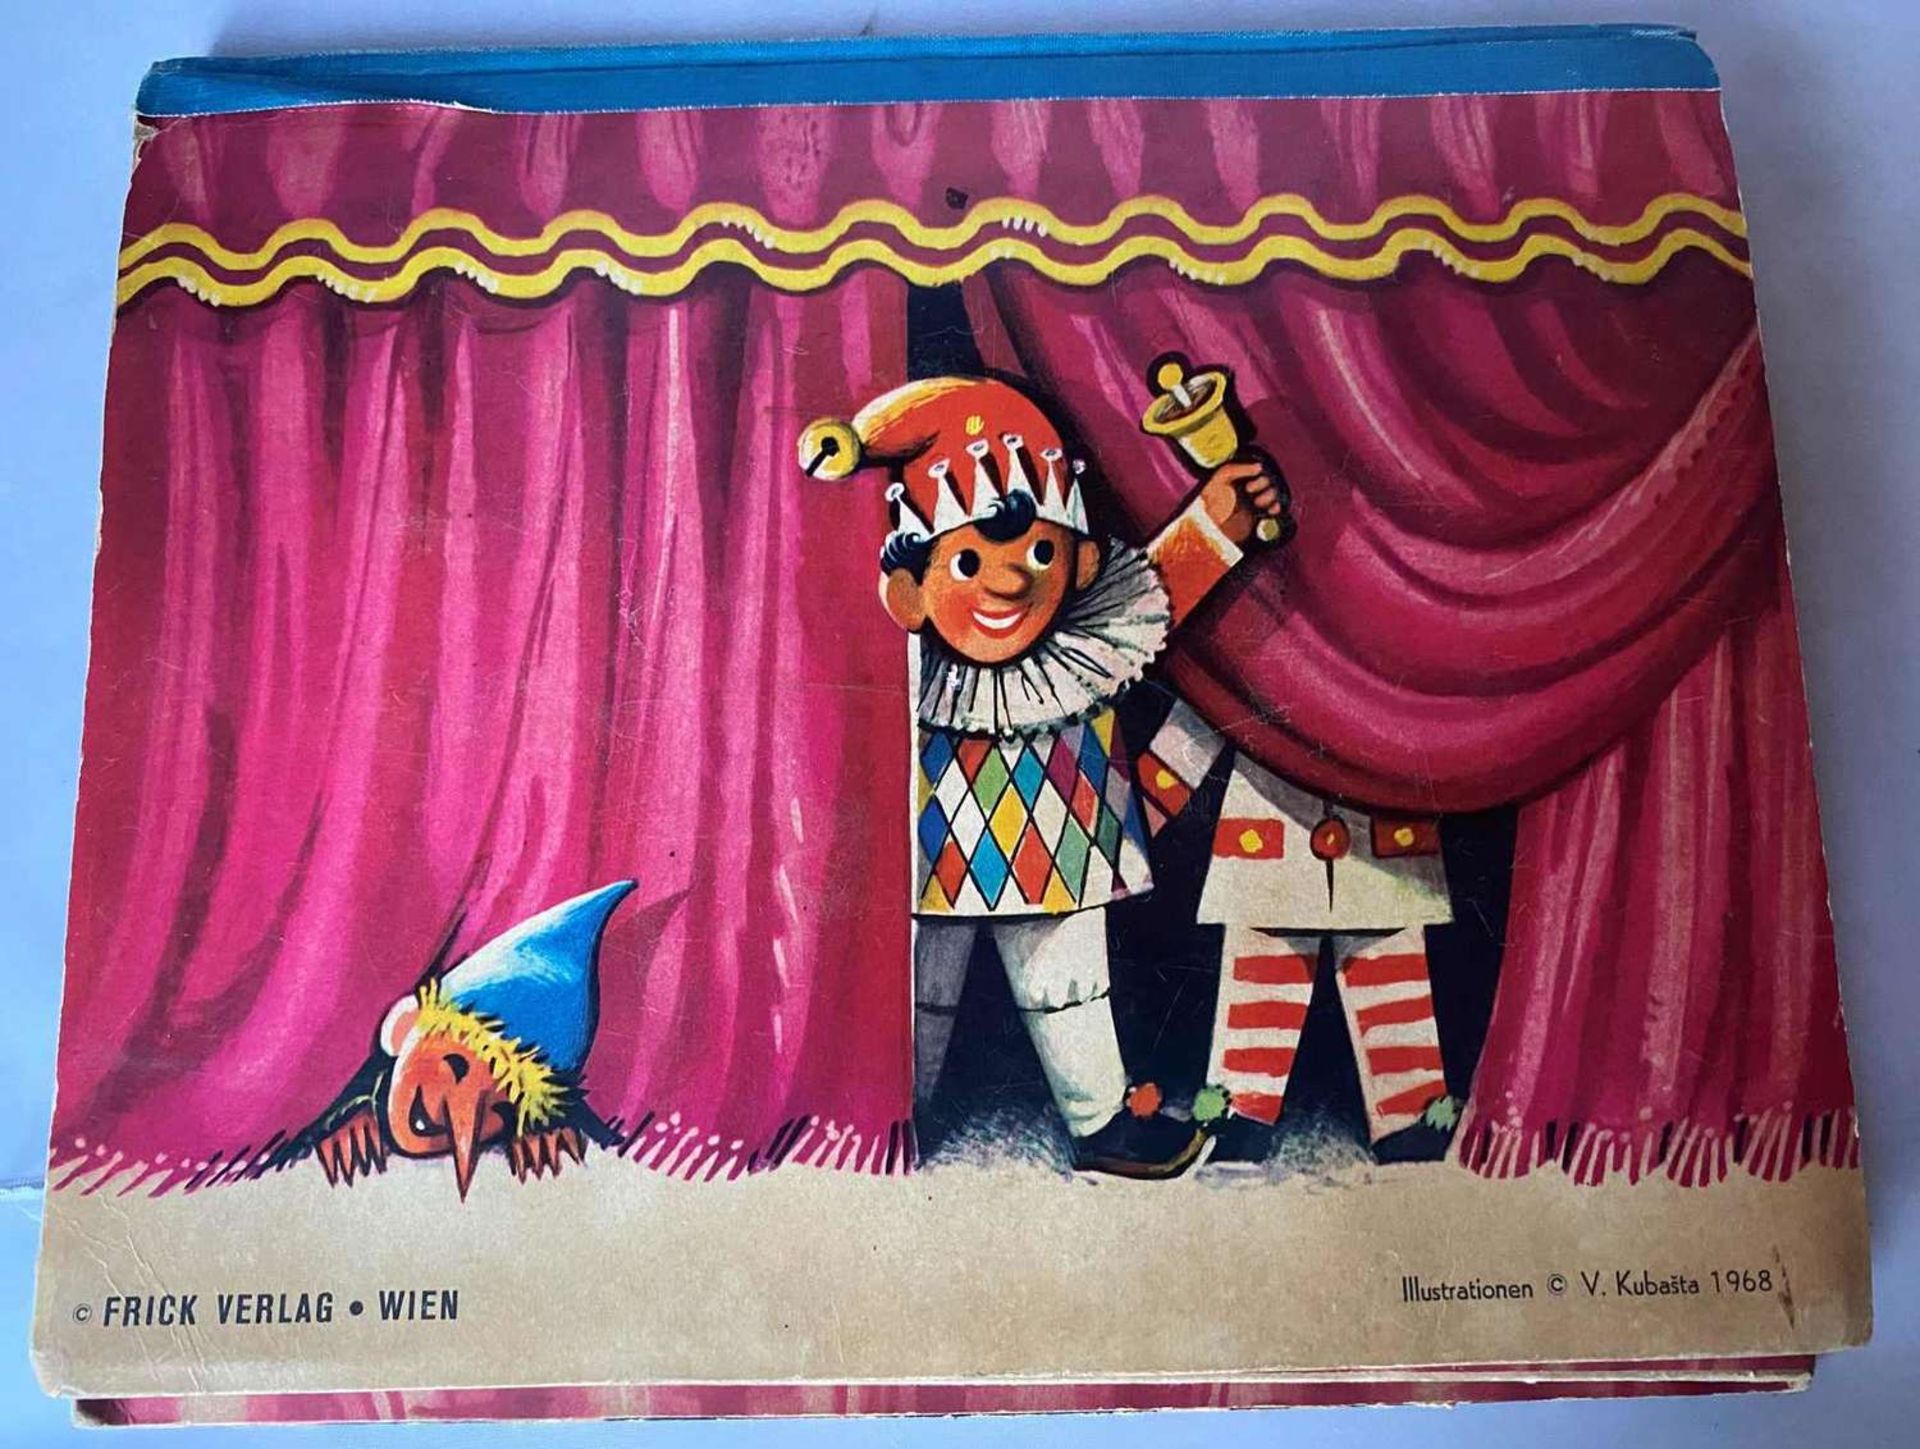 Kinderbuch : Kinder seid ihr alle da ? - Pop-up-Buch, Frick Verlag - Wien. Illustrationen V. Kubast - Bild 6 aus 6